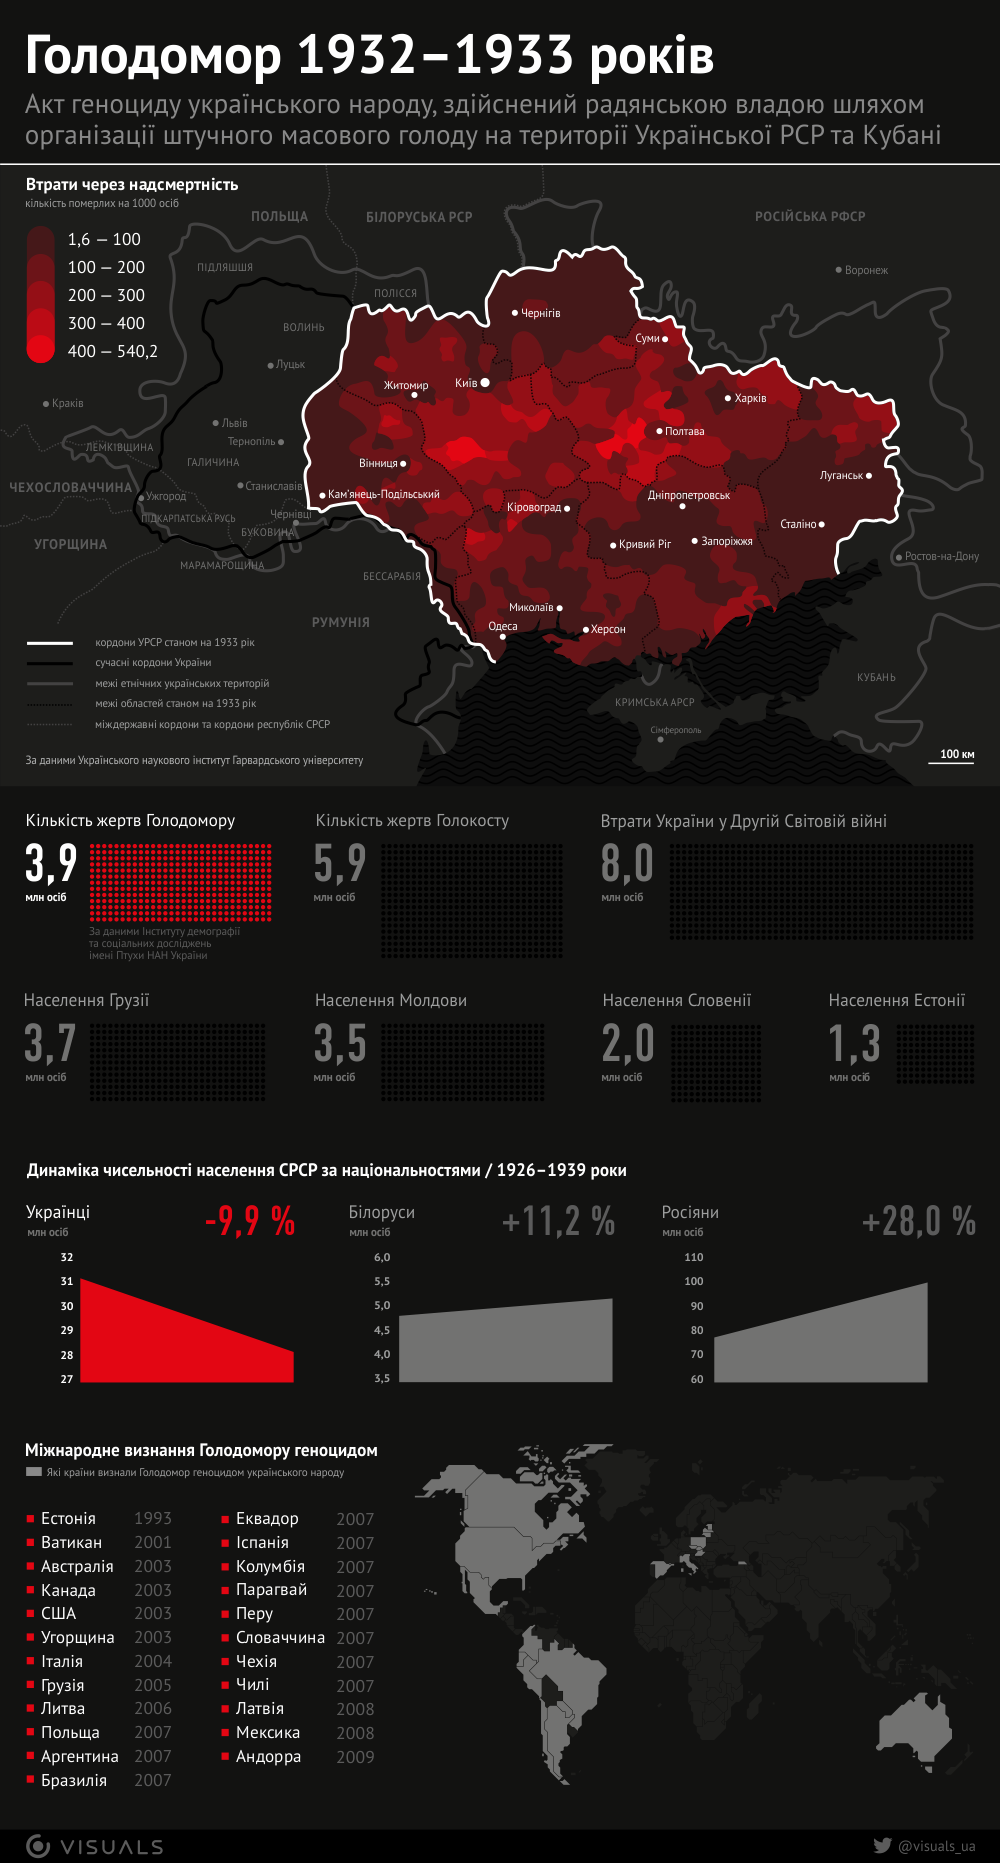 Жертв Голодомора больше, чем всех жителей Грузии: в сети опубликовали страшную инфографику